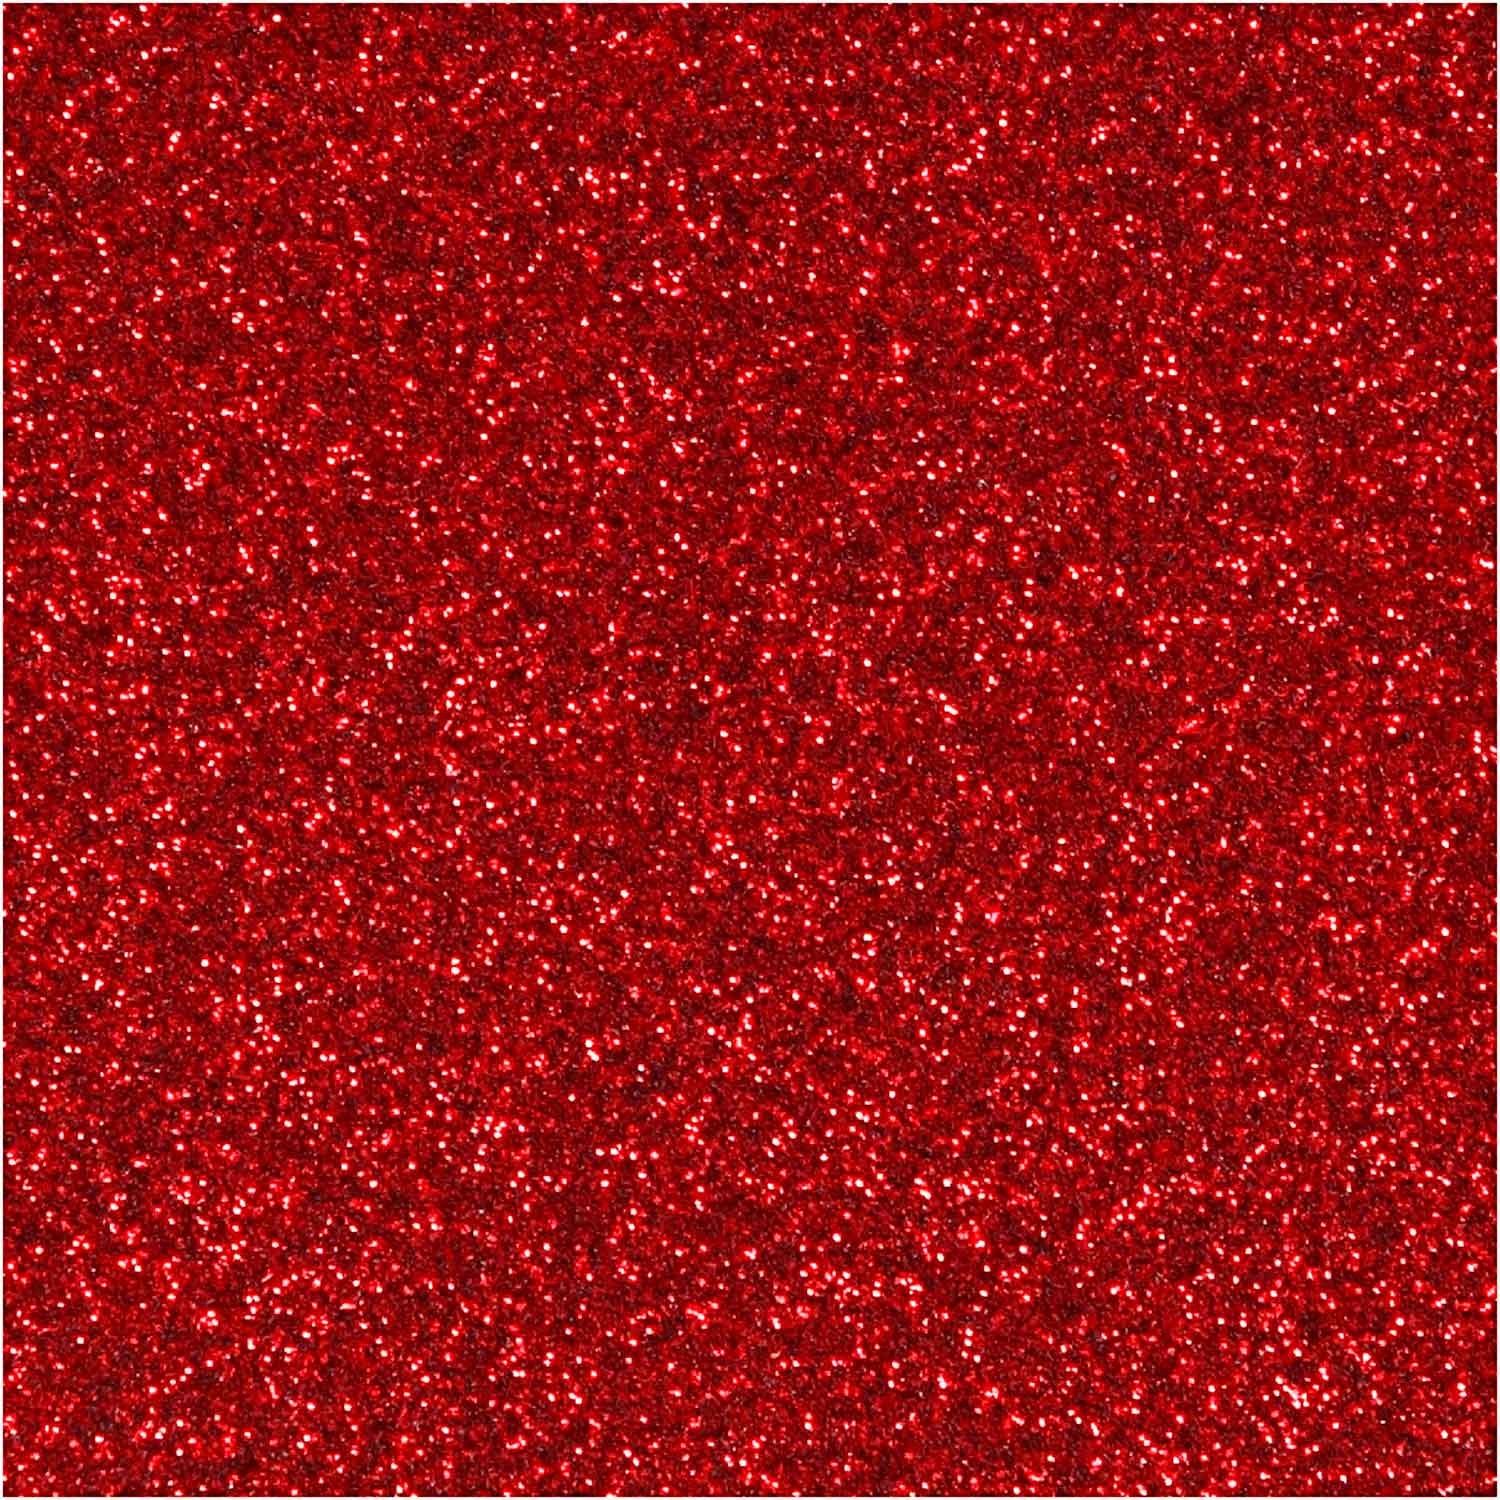 Aufbügelfolie Glitter Rot, A5